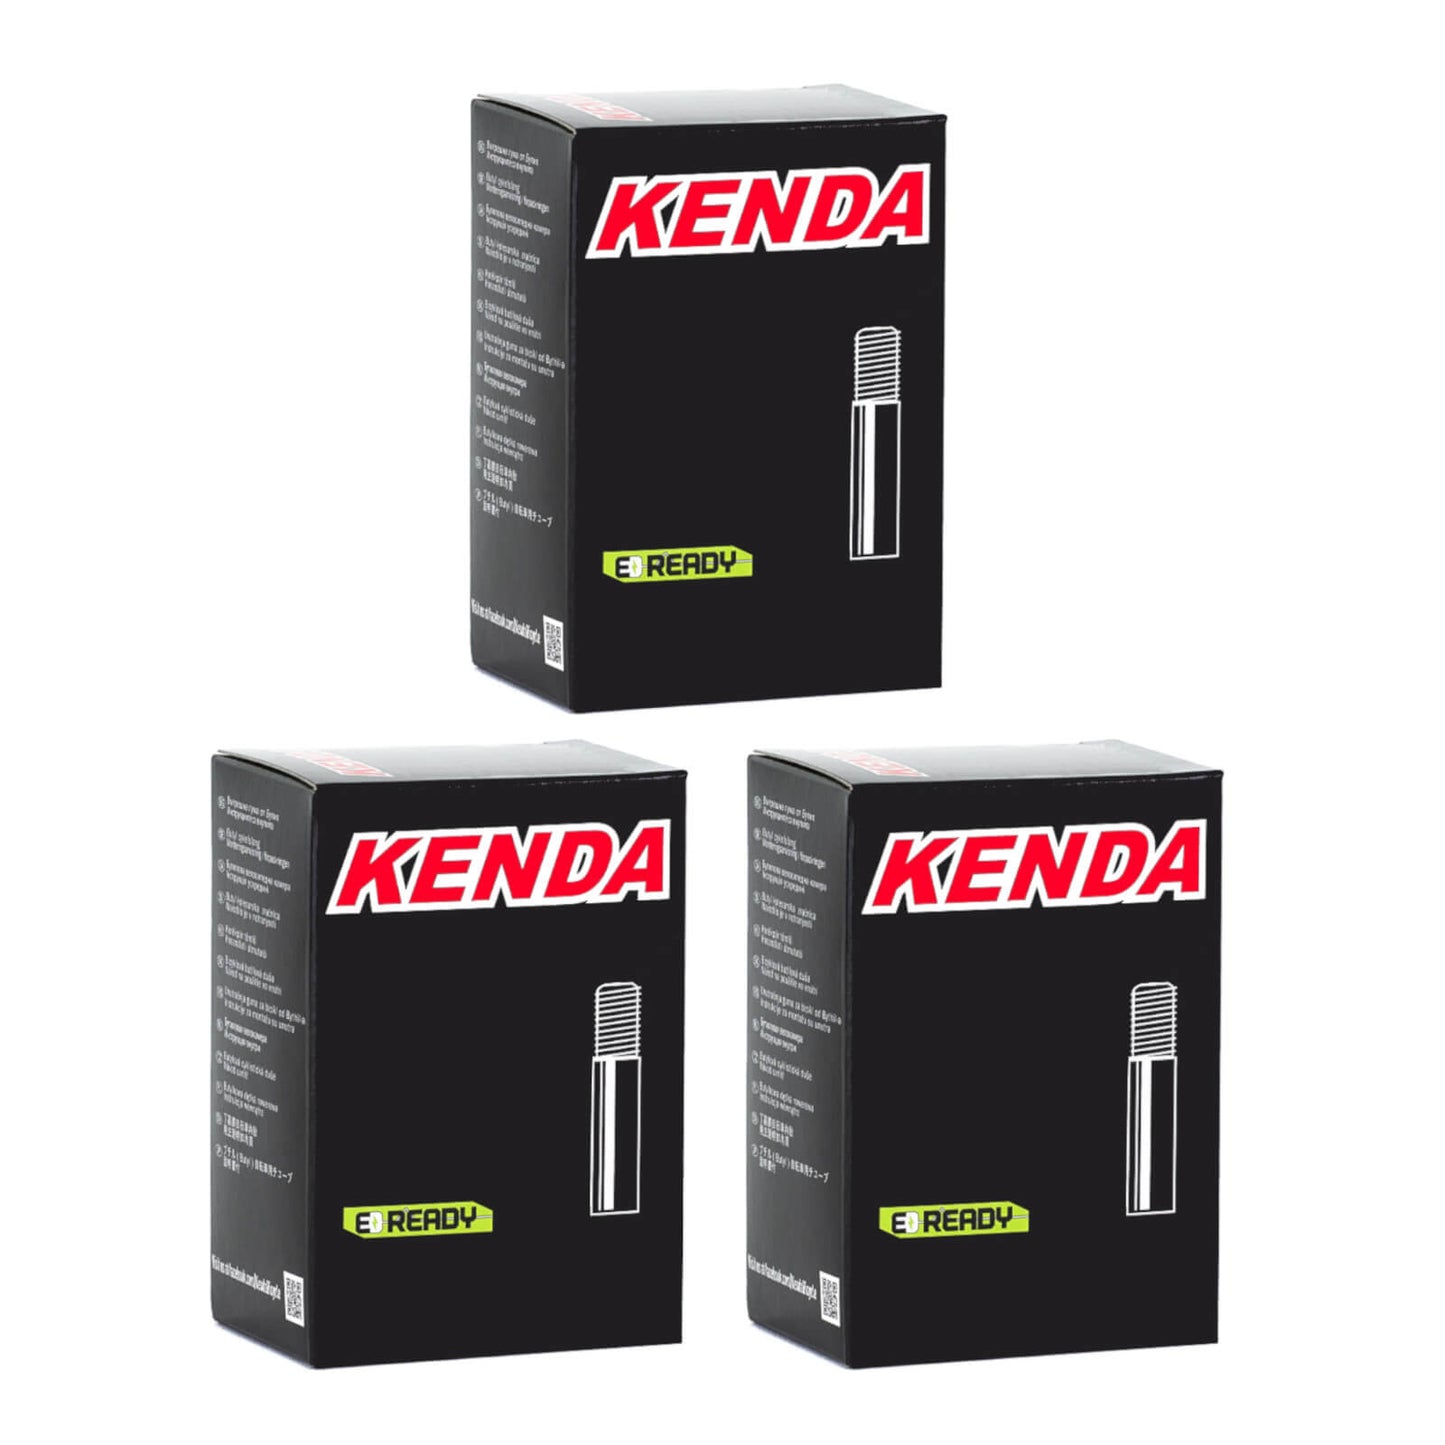 Kenda 700x45-50c 700c Schrader Valve Bike Inner Tube Pack of 3